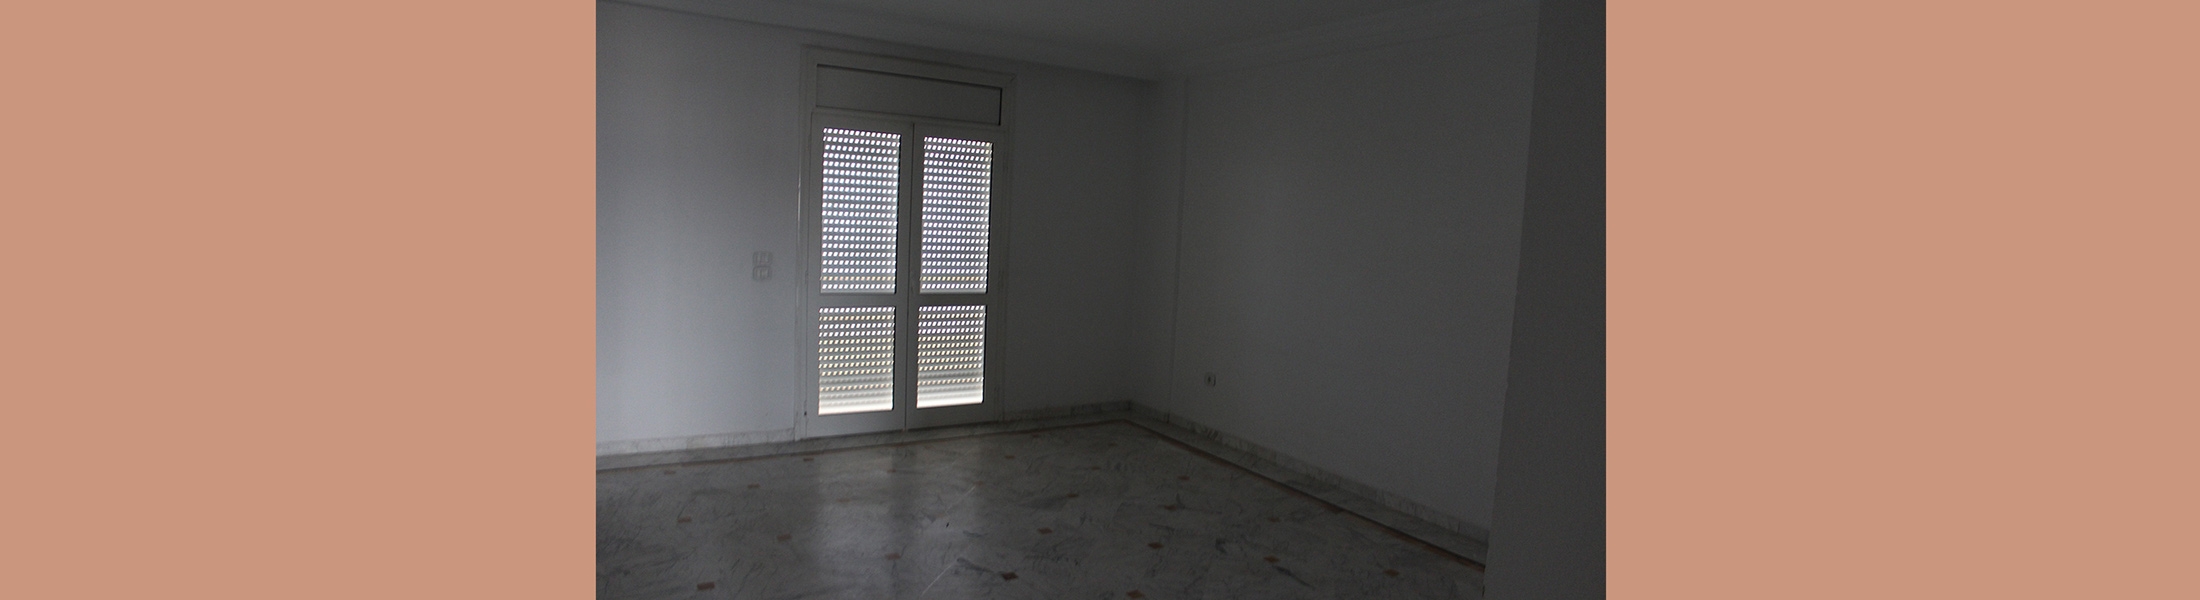 الشقة سيتي سنتر 204 بالمركز العمراني الشمالي – تونس (طلب العروض عدد 02 لسنة 2022)